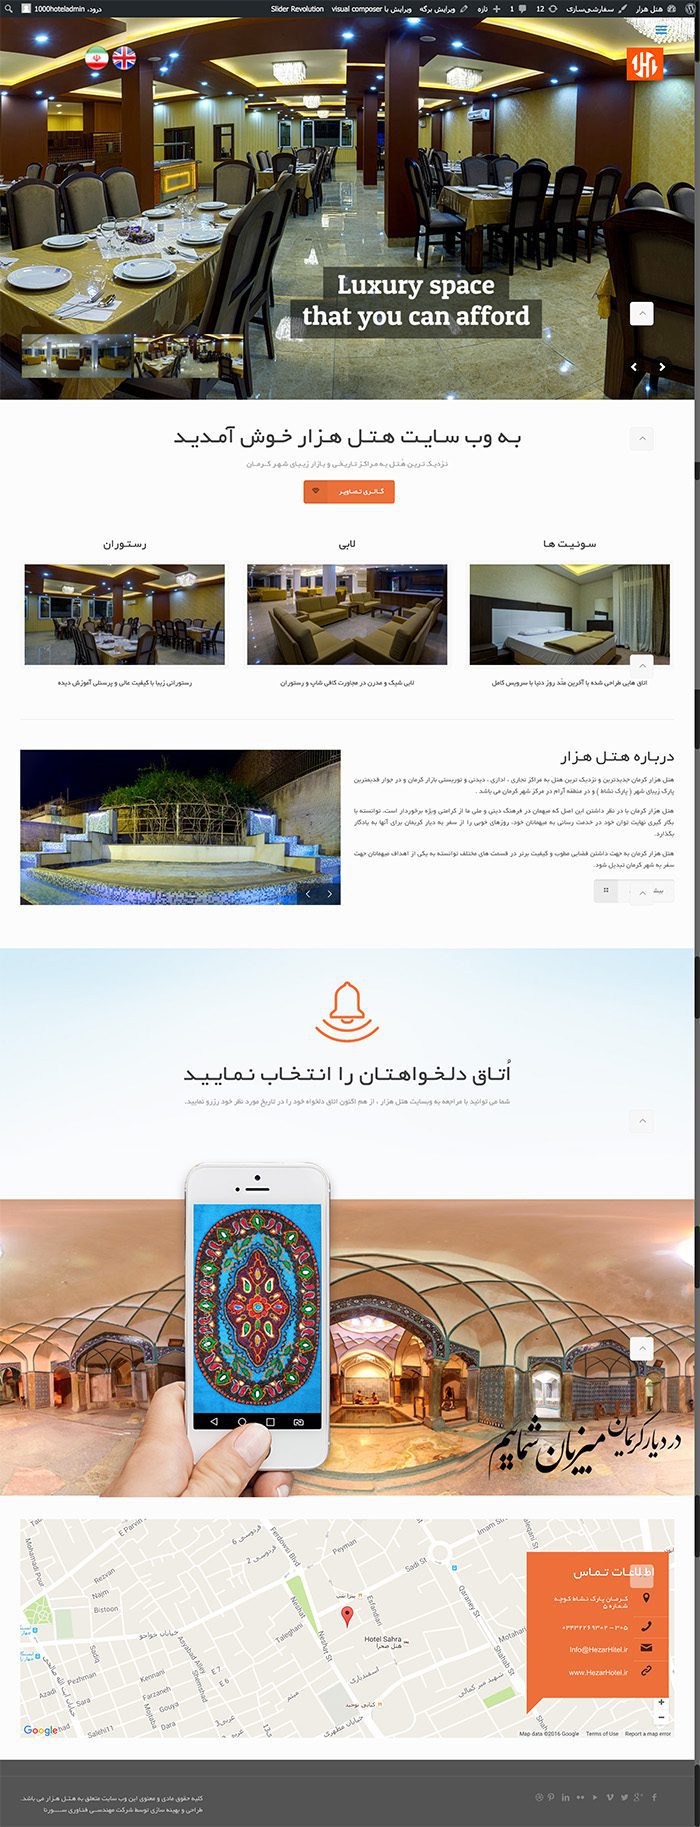 طراحی سایت هتل هزار توسط شرکت طراحی سایت سورنا در کرمان